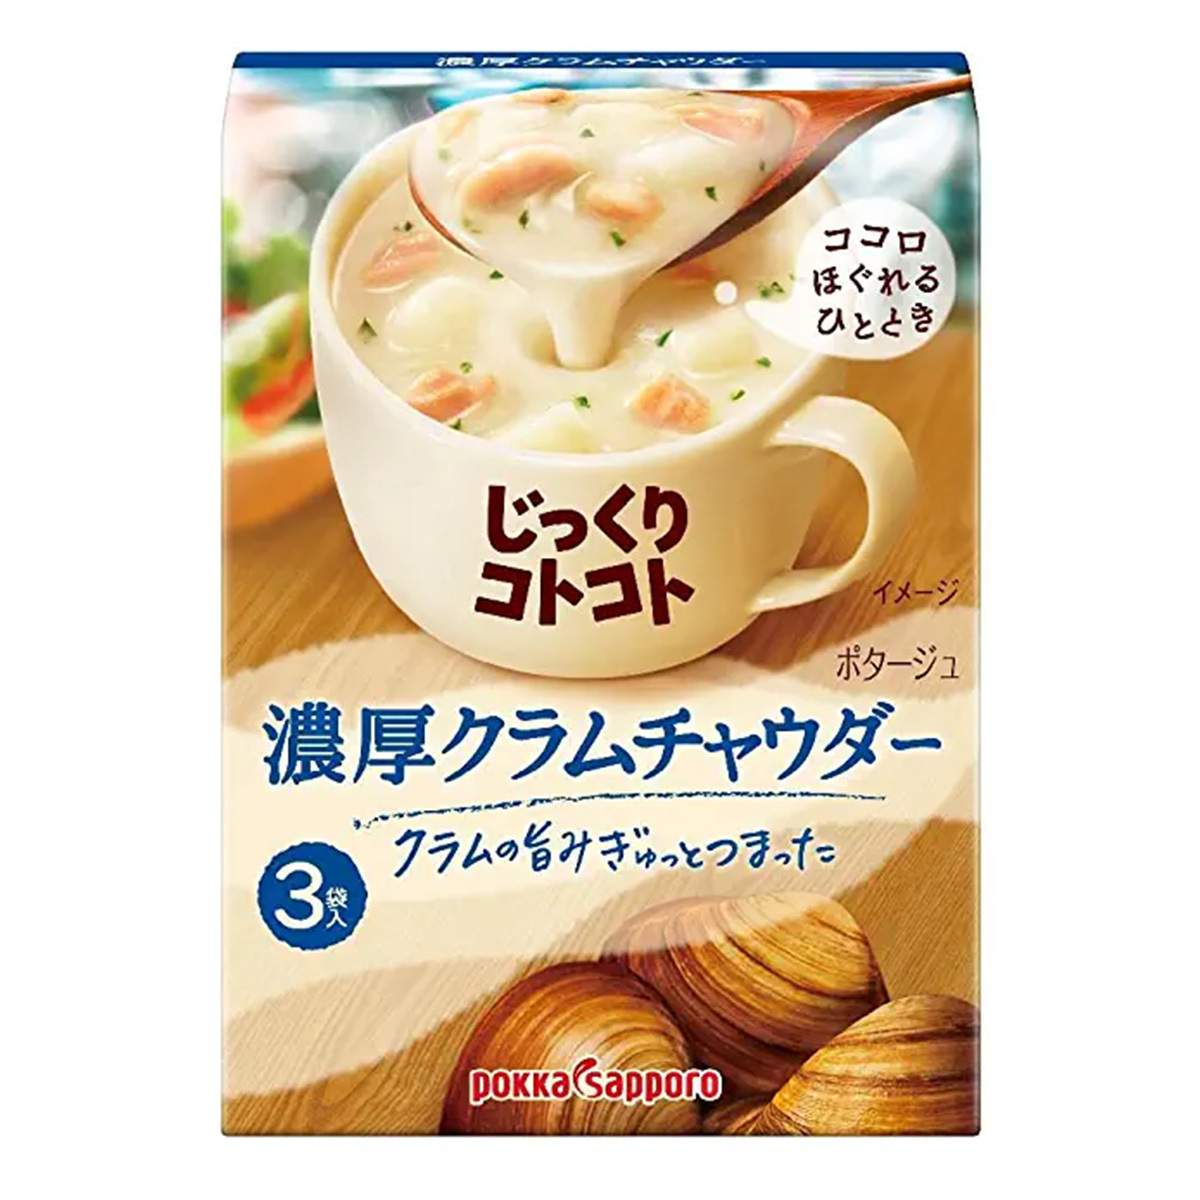 pokka sapporo ポッカサッポロ じっくりコトコト 濃厚クラムポタージュ 53.4g（3袋入）×1箱 じっくりコトコト スープの商品画像